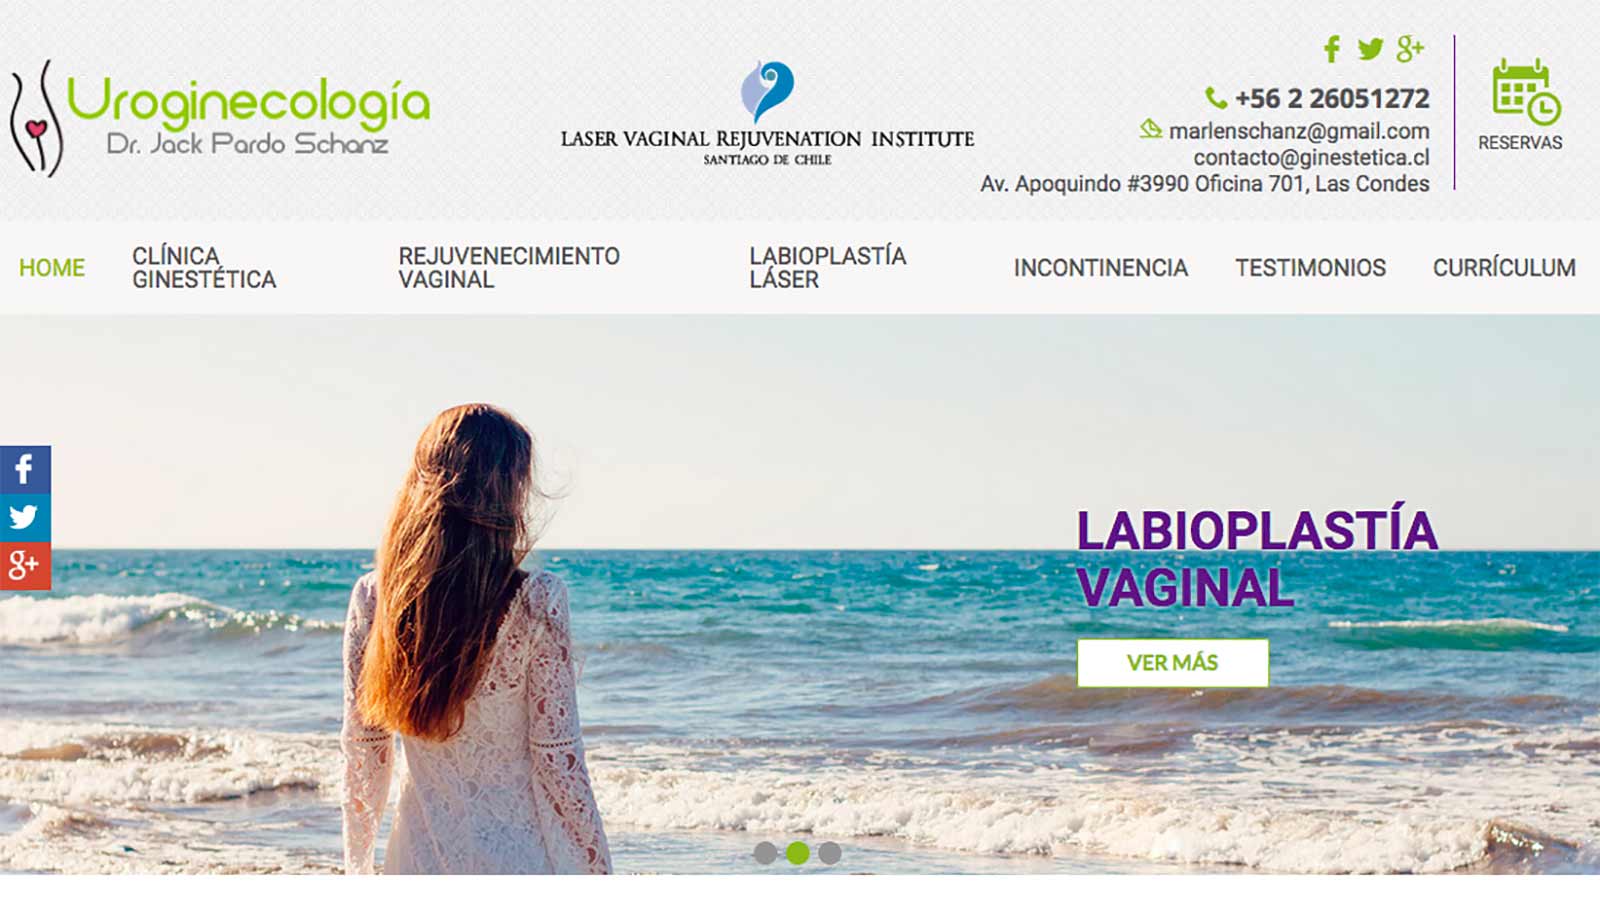 Labioplastia vaginal léser en Chile